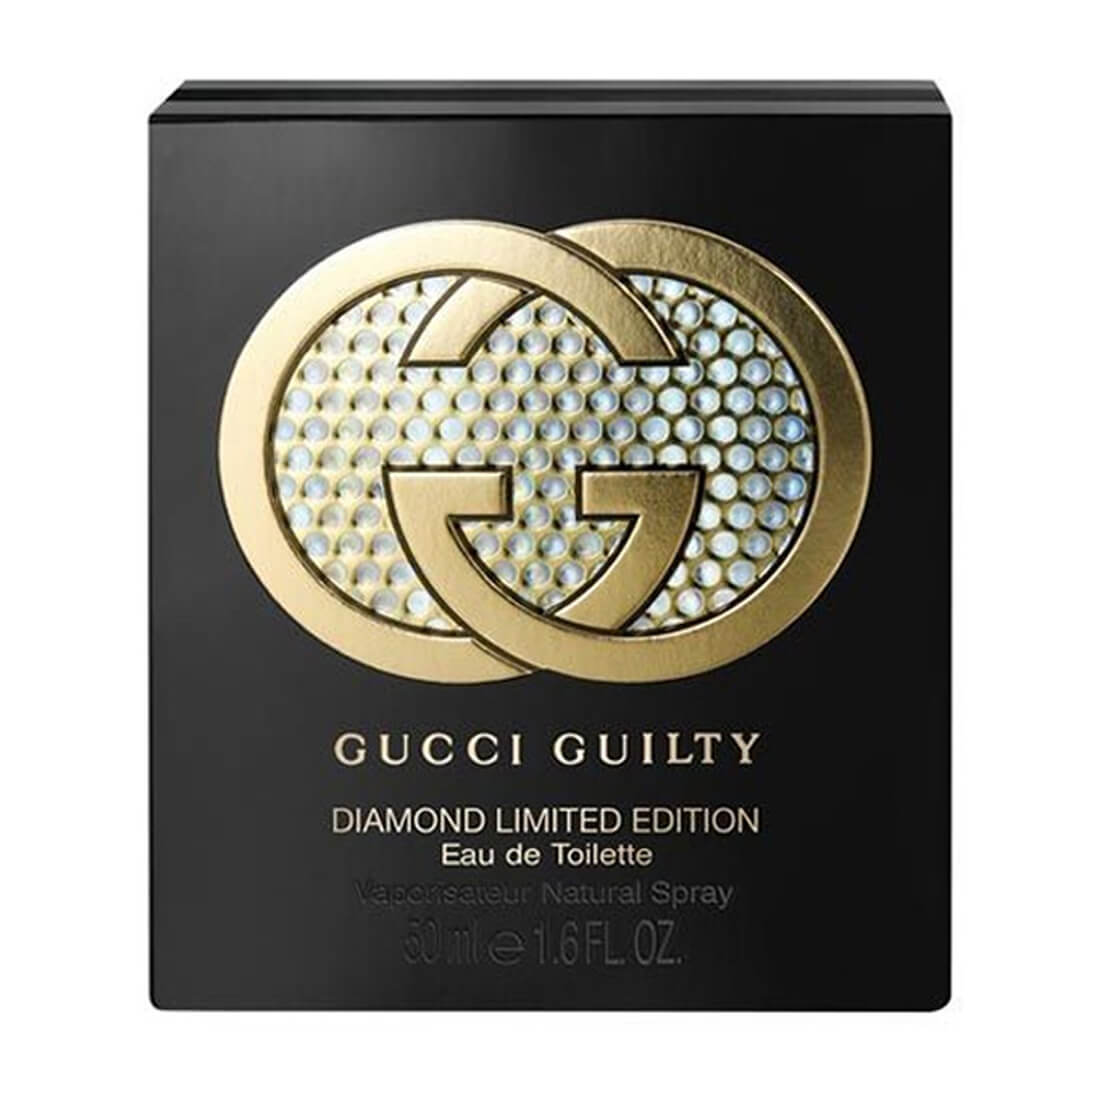 Gucci Guilty Diamond Limited Edition Eau De Toilette 50ml